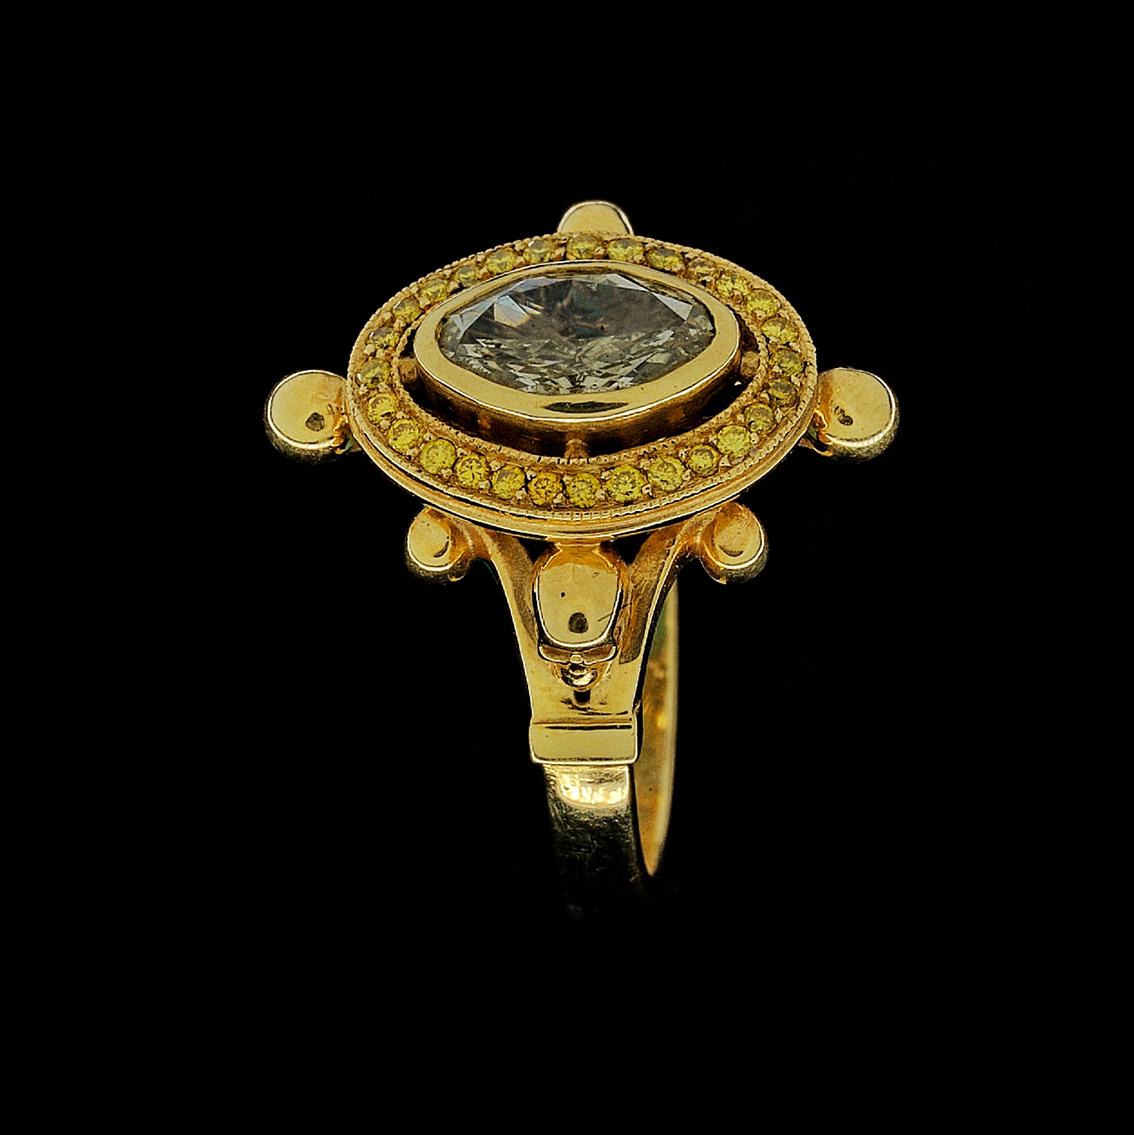 Dieser Ring aus 18-karätigem Gelbgold mit Diamanten und Totenköpfen ist dunkle Opulenz in Reinkultur. 

Dieser High Fashion Gothic Statement Ring ist handgefertigt in 18kt Gelbgold, mit einem zentralen Lünettenfassung oval geschnittenen Diamanten,